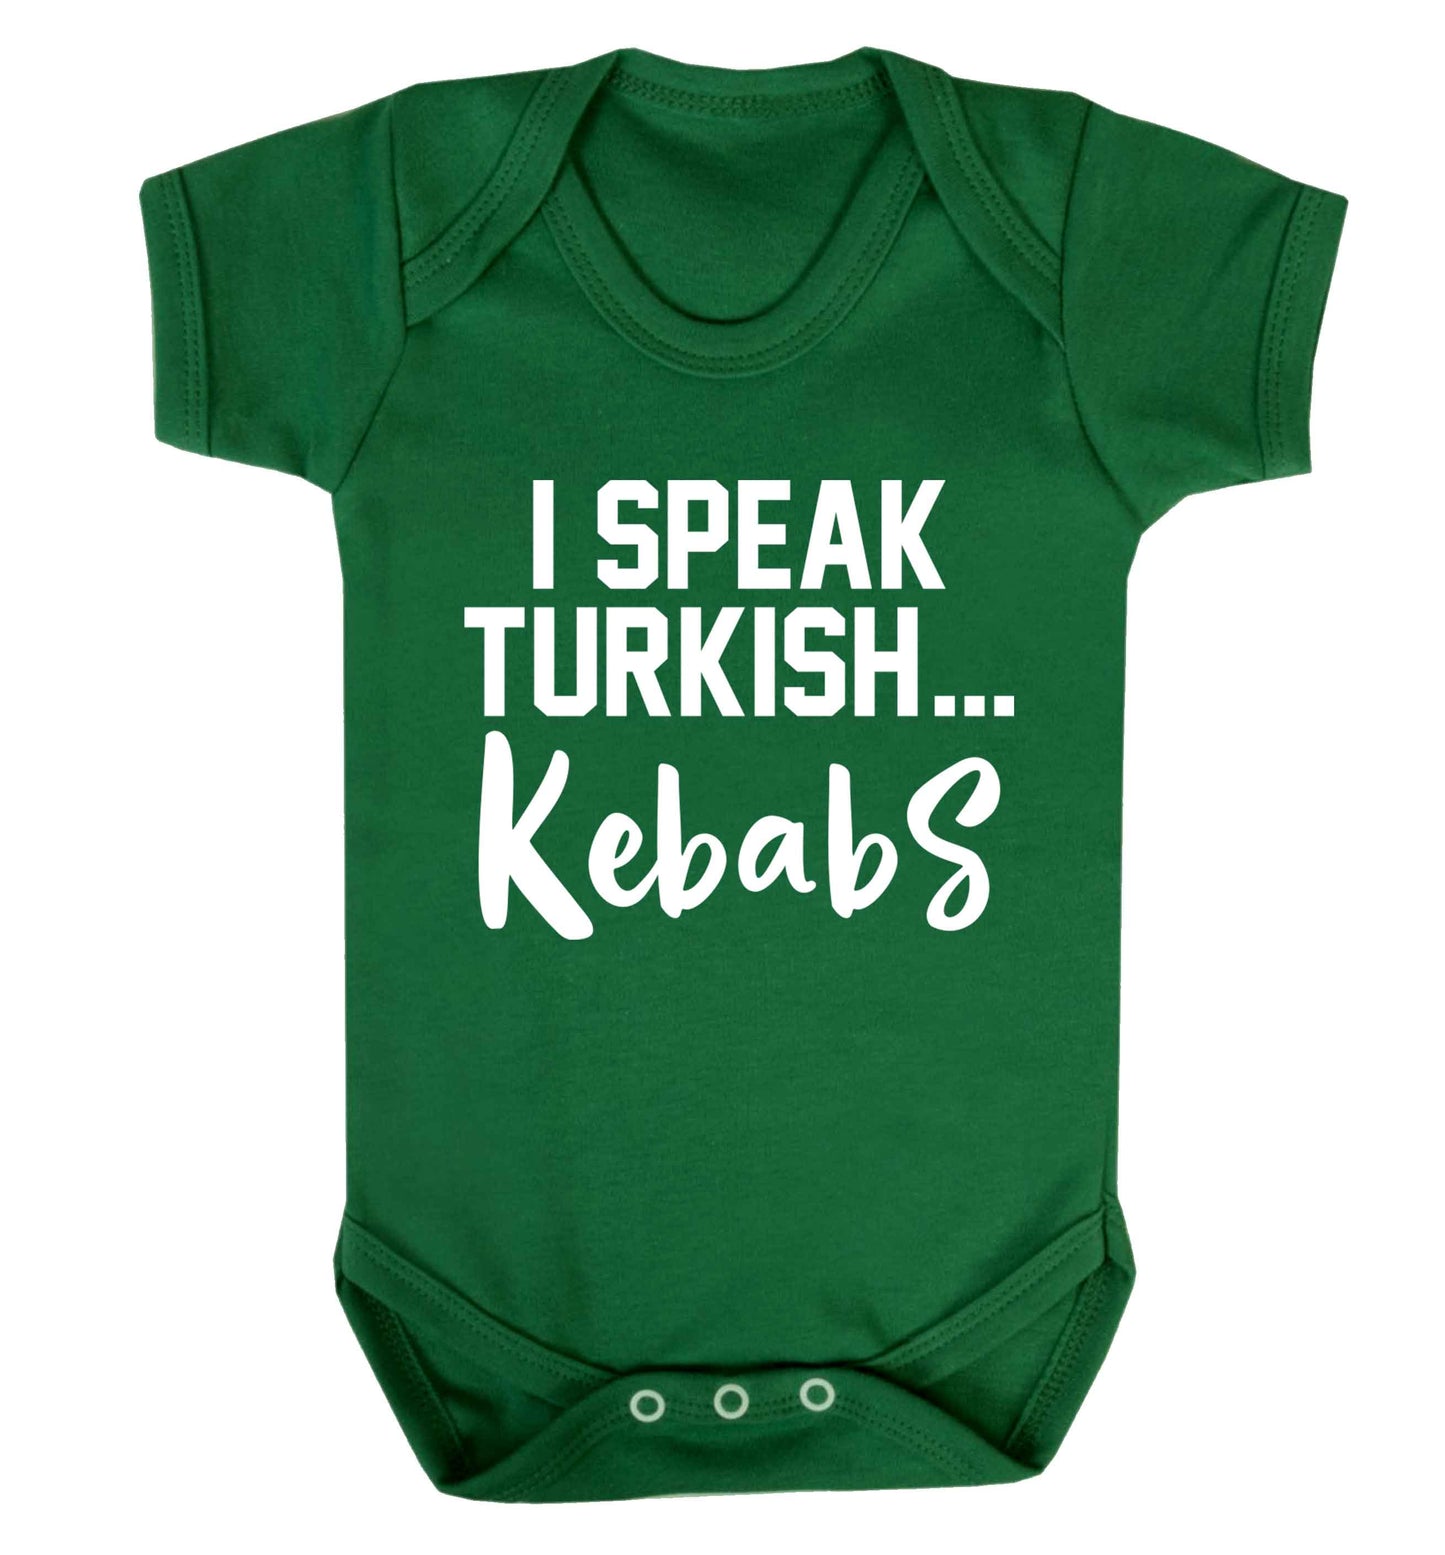 I speak Turkish...kebabs Baby Vest green 18-24 months